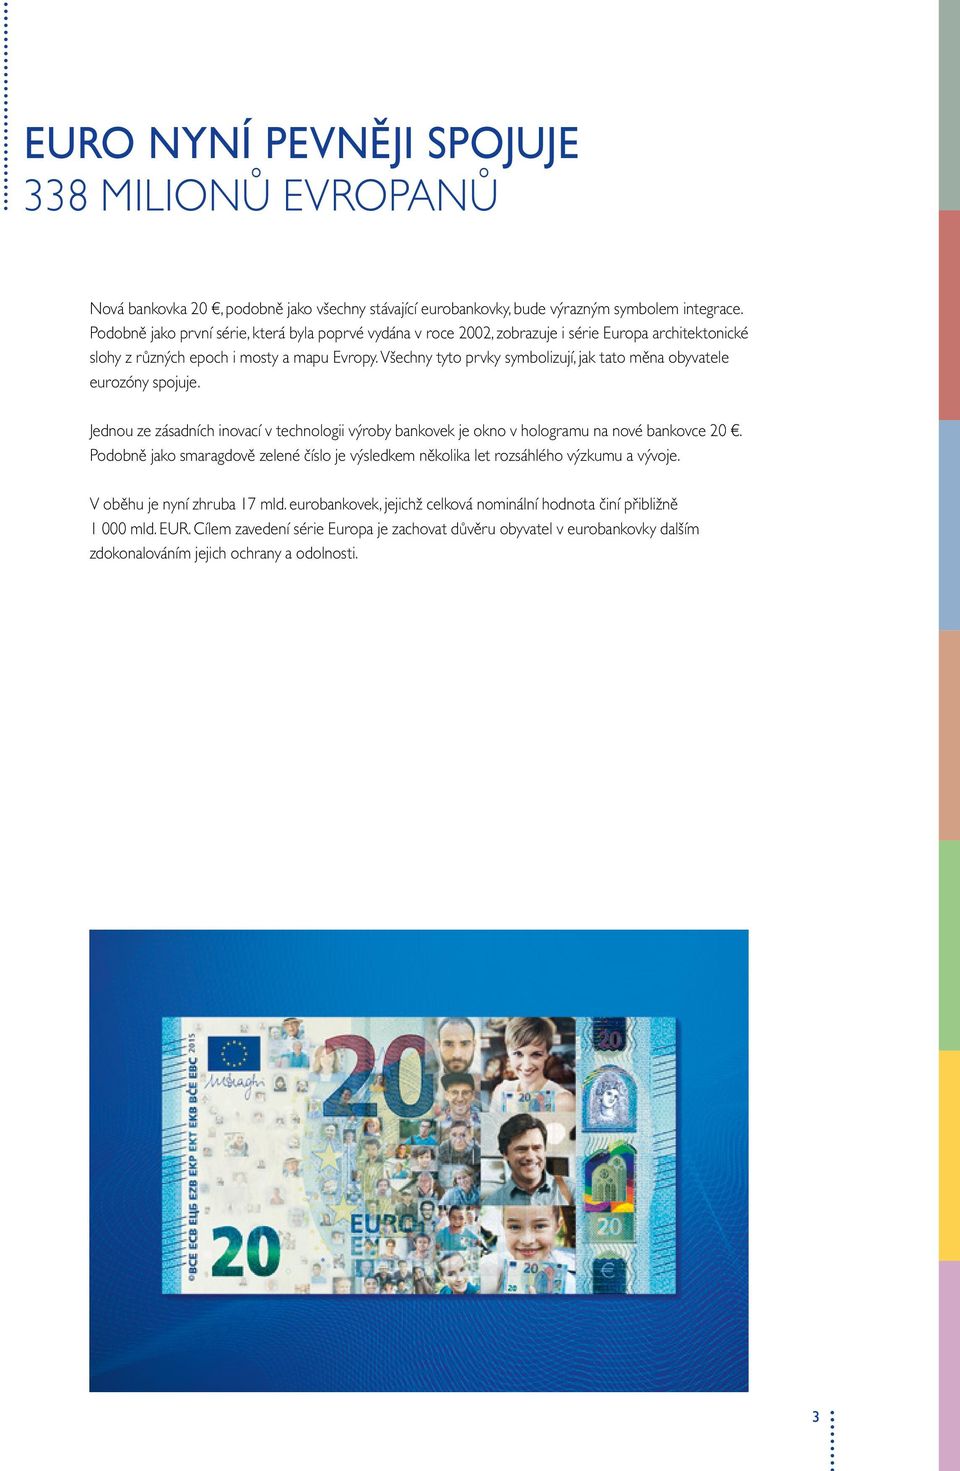 Všechny tyto prvky symbolizují, jak tato měna obyvatele eurozóny spojuje. Jednou ze zásadních inovací v technologii výroby bankovek je okno v hologramu na nové bankovce.